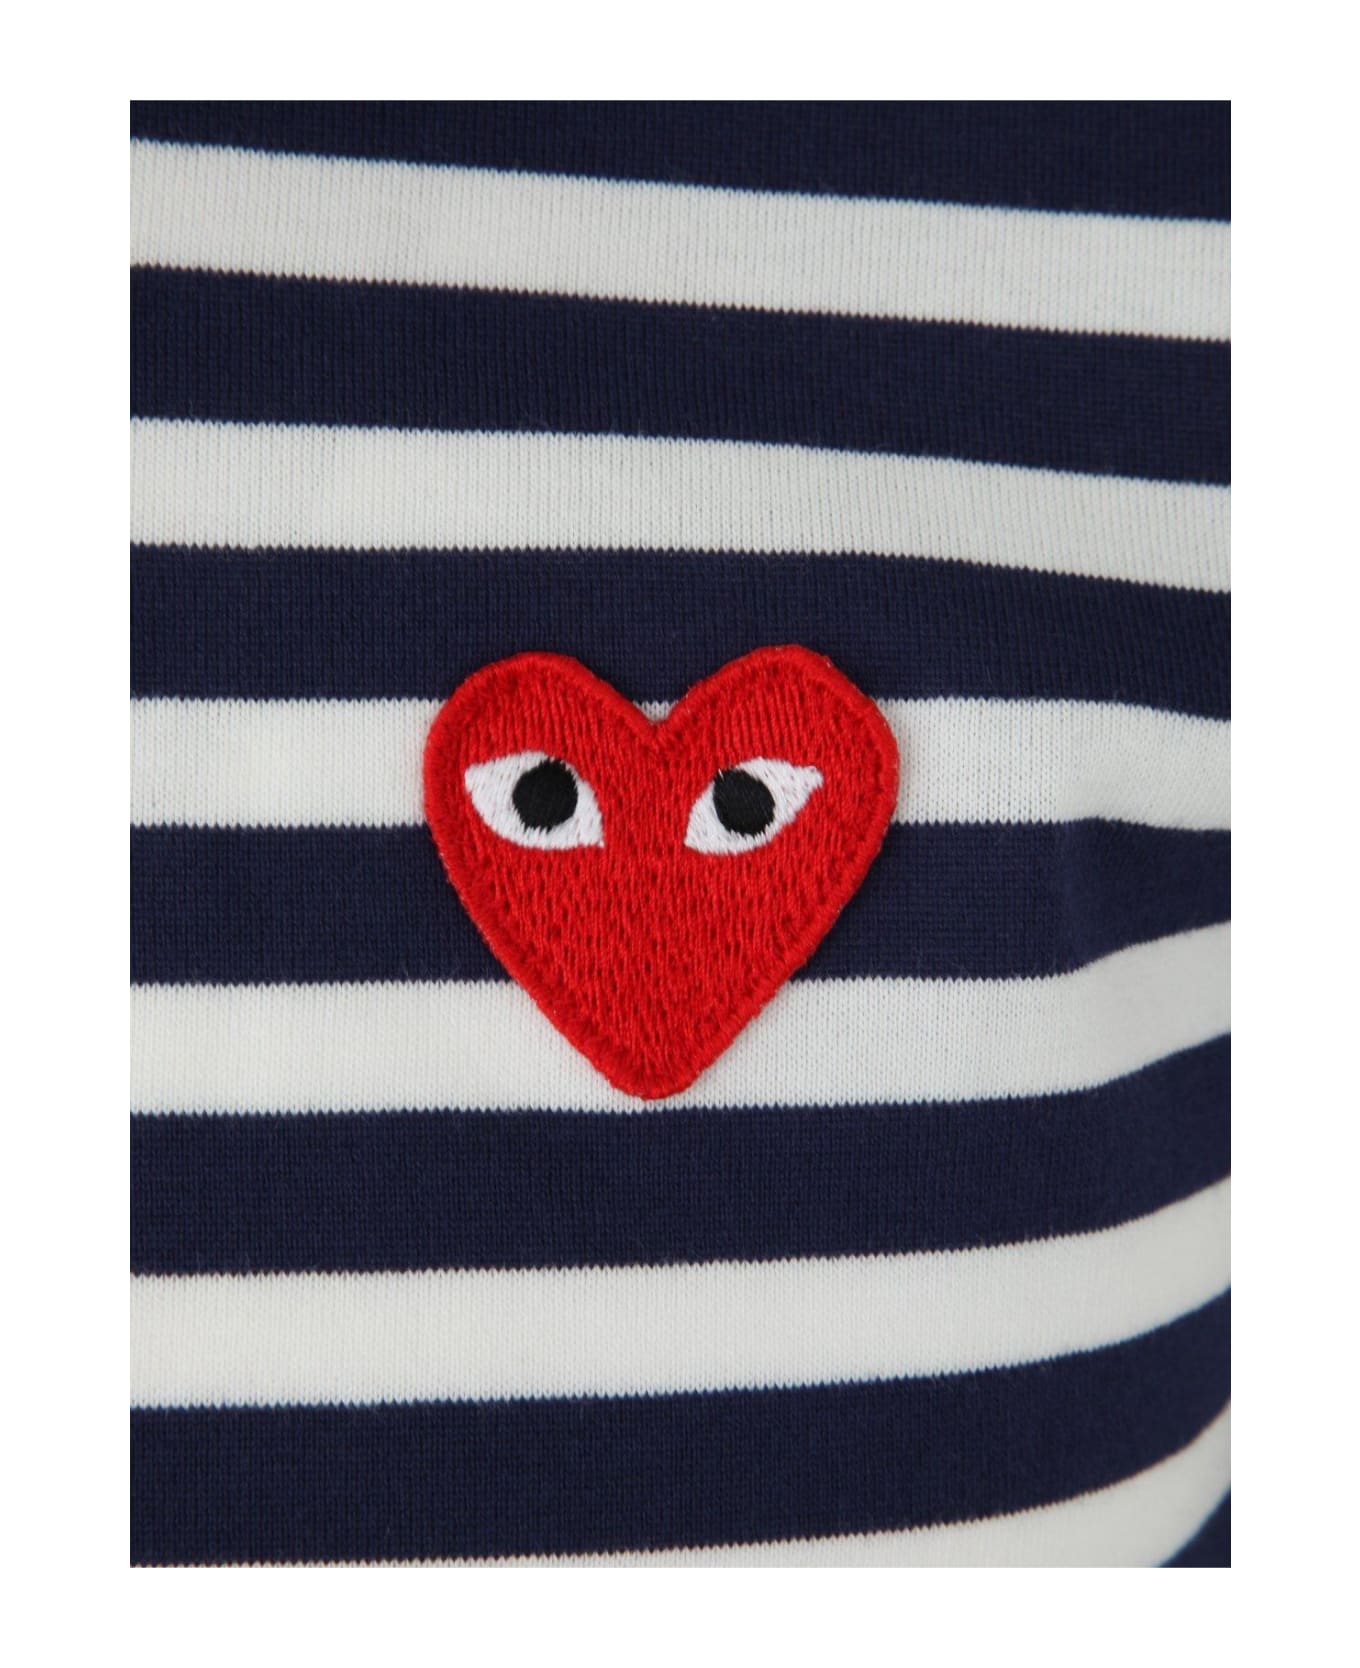 Comme des Garçons Play Striped Logo Motif T-shirt - Navy シャツ